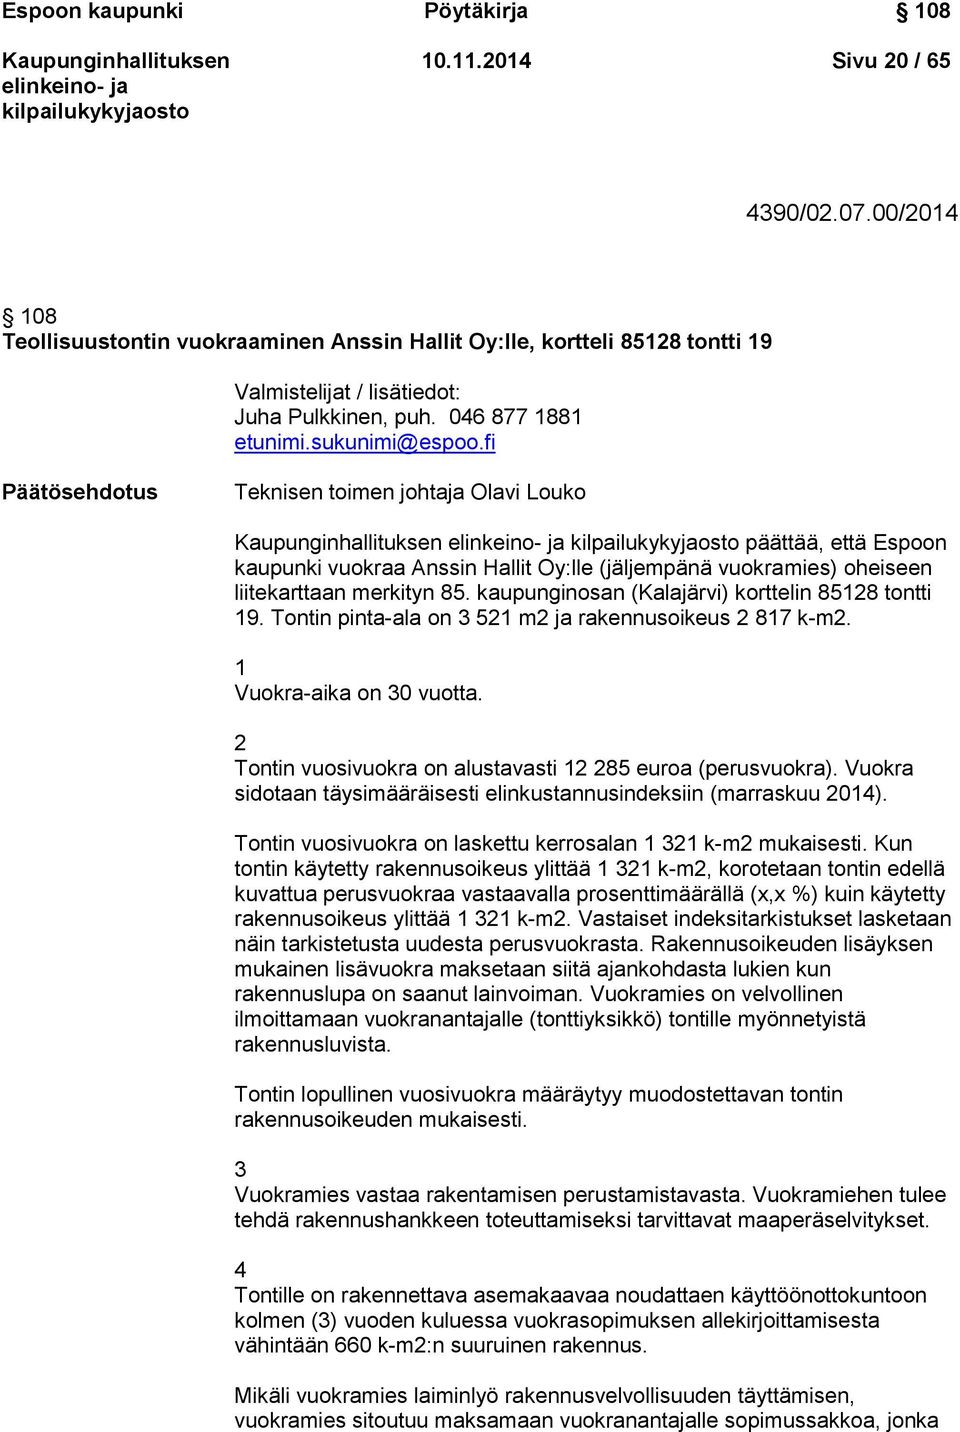 fi Päätösehdotus Teknisen toimen johtaja Olavi Louko päättää, että Espoon kaupunki vuokraa Anssin Hallit Oy:lle (jäljempänä vuokramies) oheiseen liitekarttaan merkityn 85.